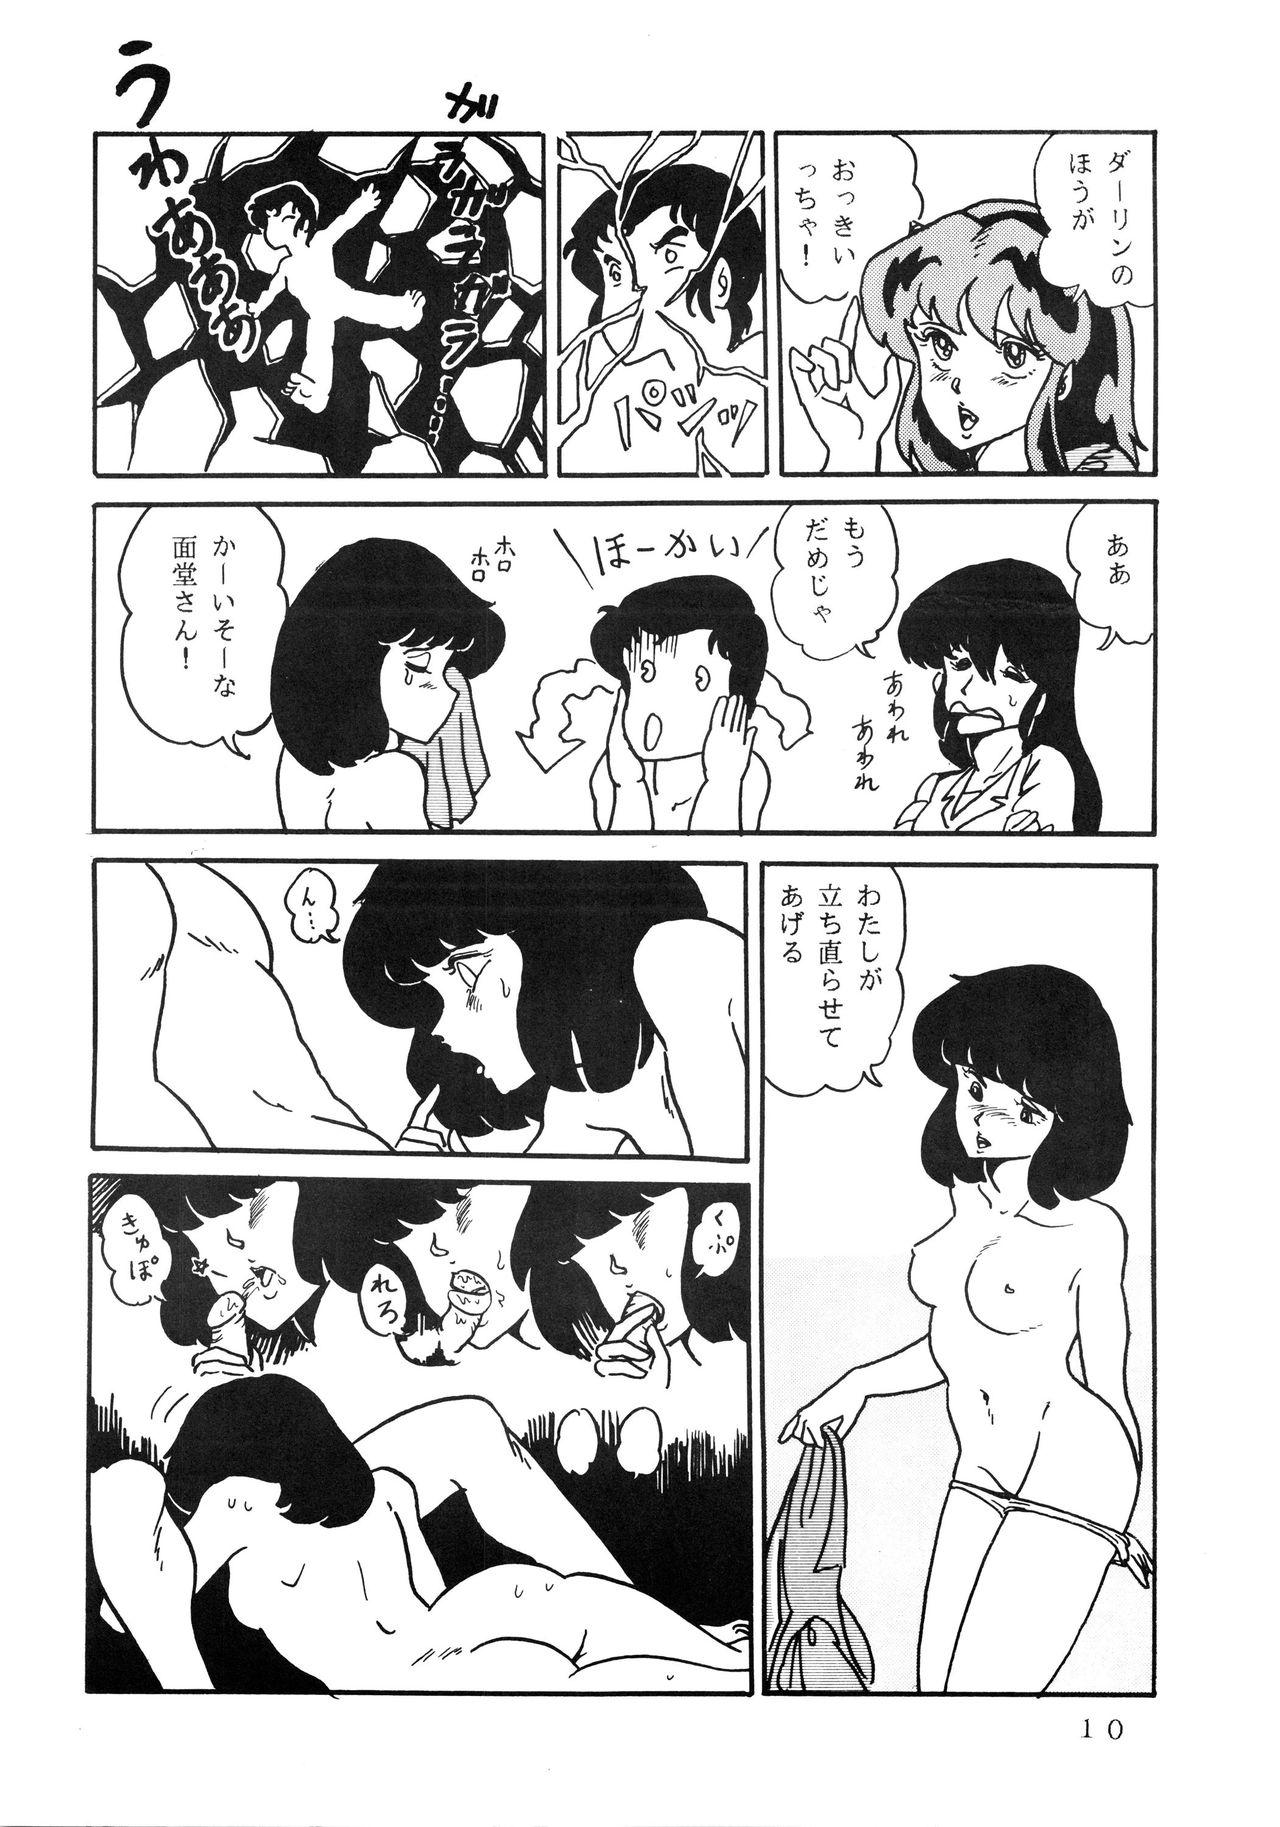 Gostosas Shijou Saiaku no LUM 4 - Urusei yatsura Gay Emo - Page 10